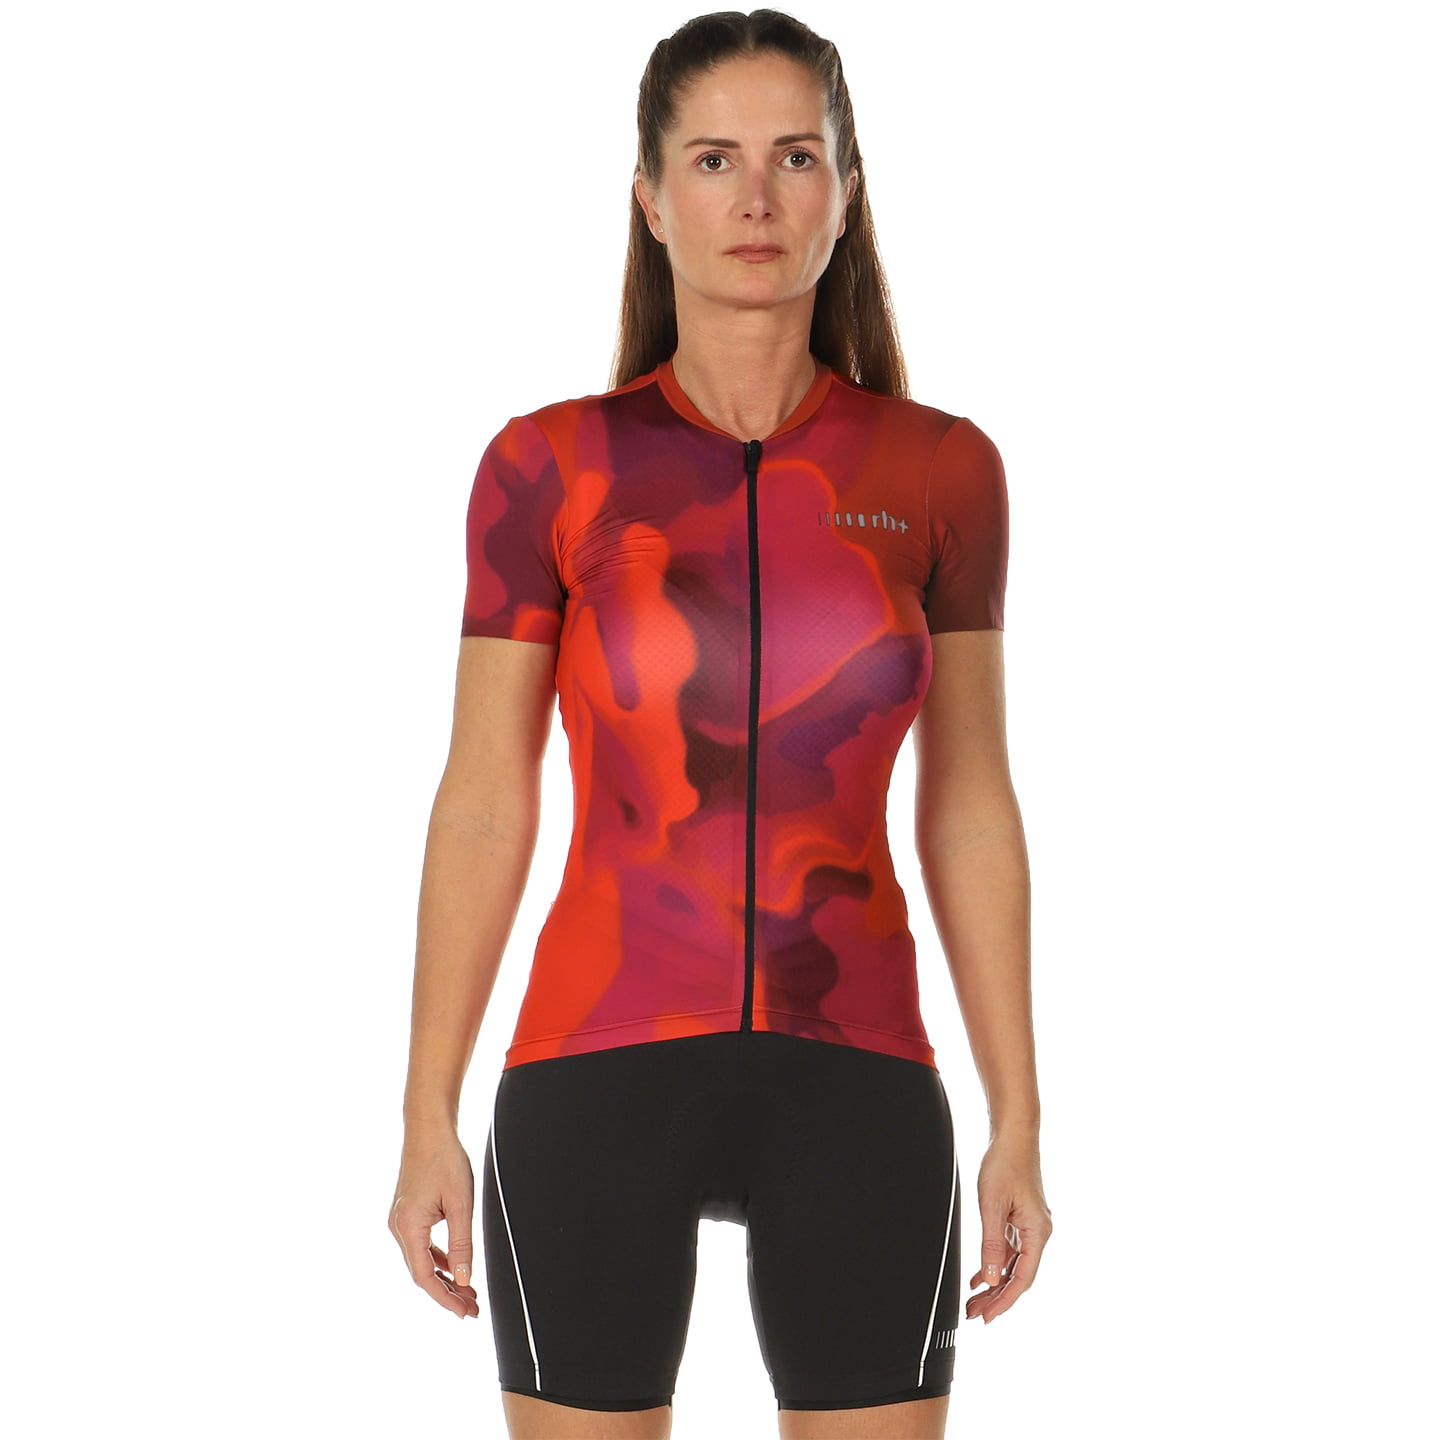 RH+ Light Evo Women’s Set (cycling jersey + cycling shorts) Women’s Set (2 pieces), Cycling clothing